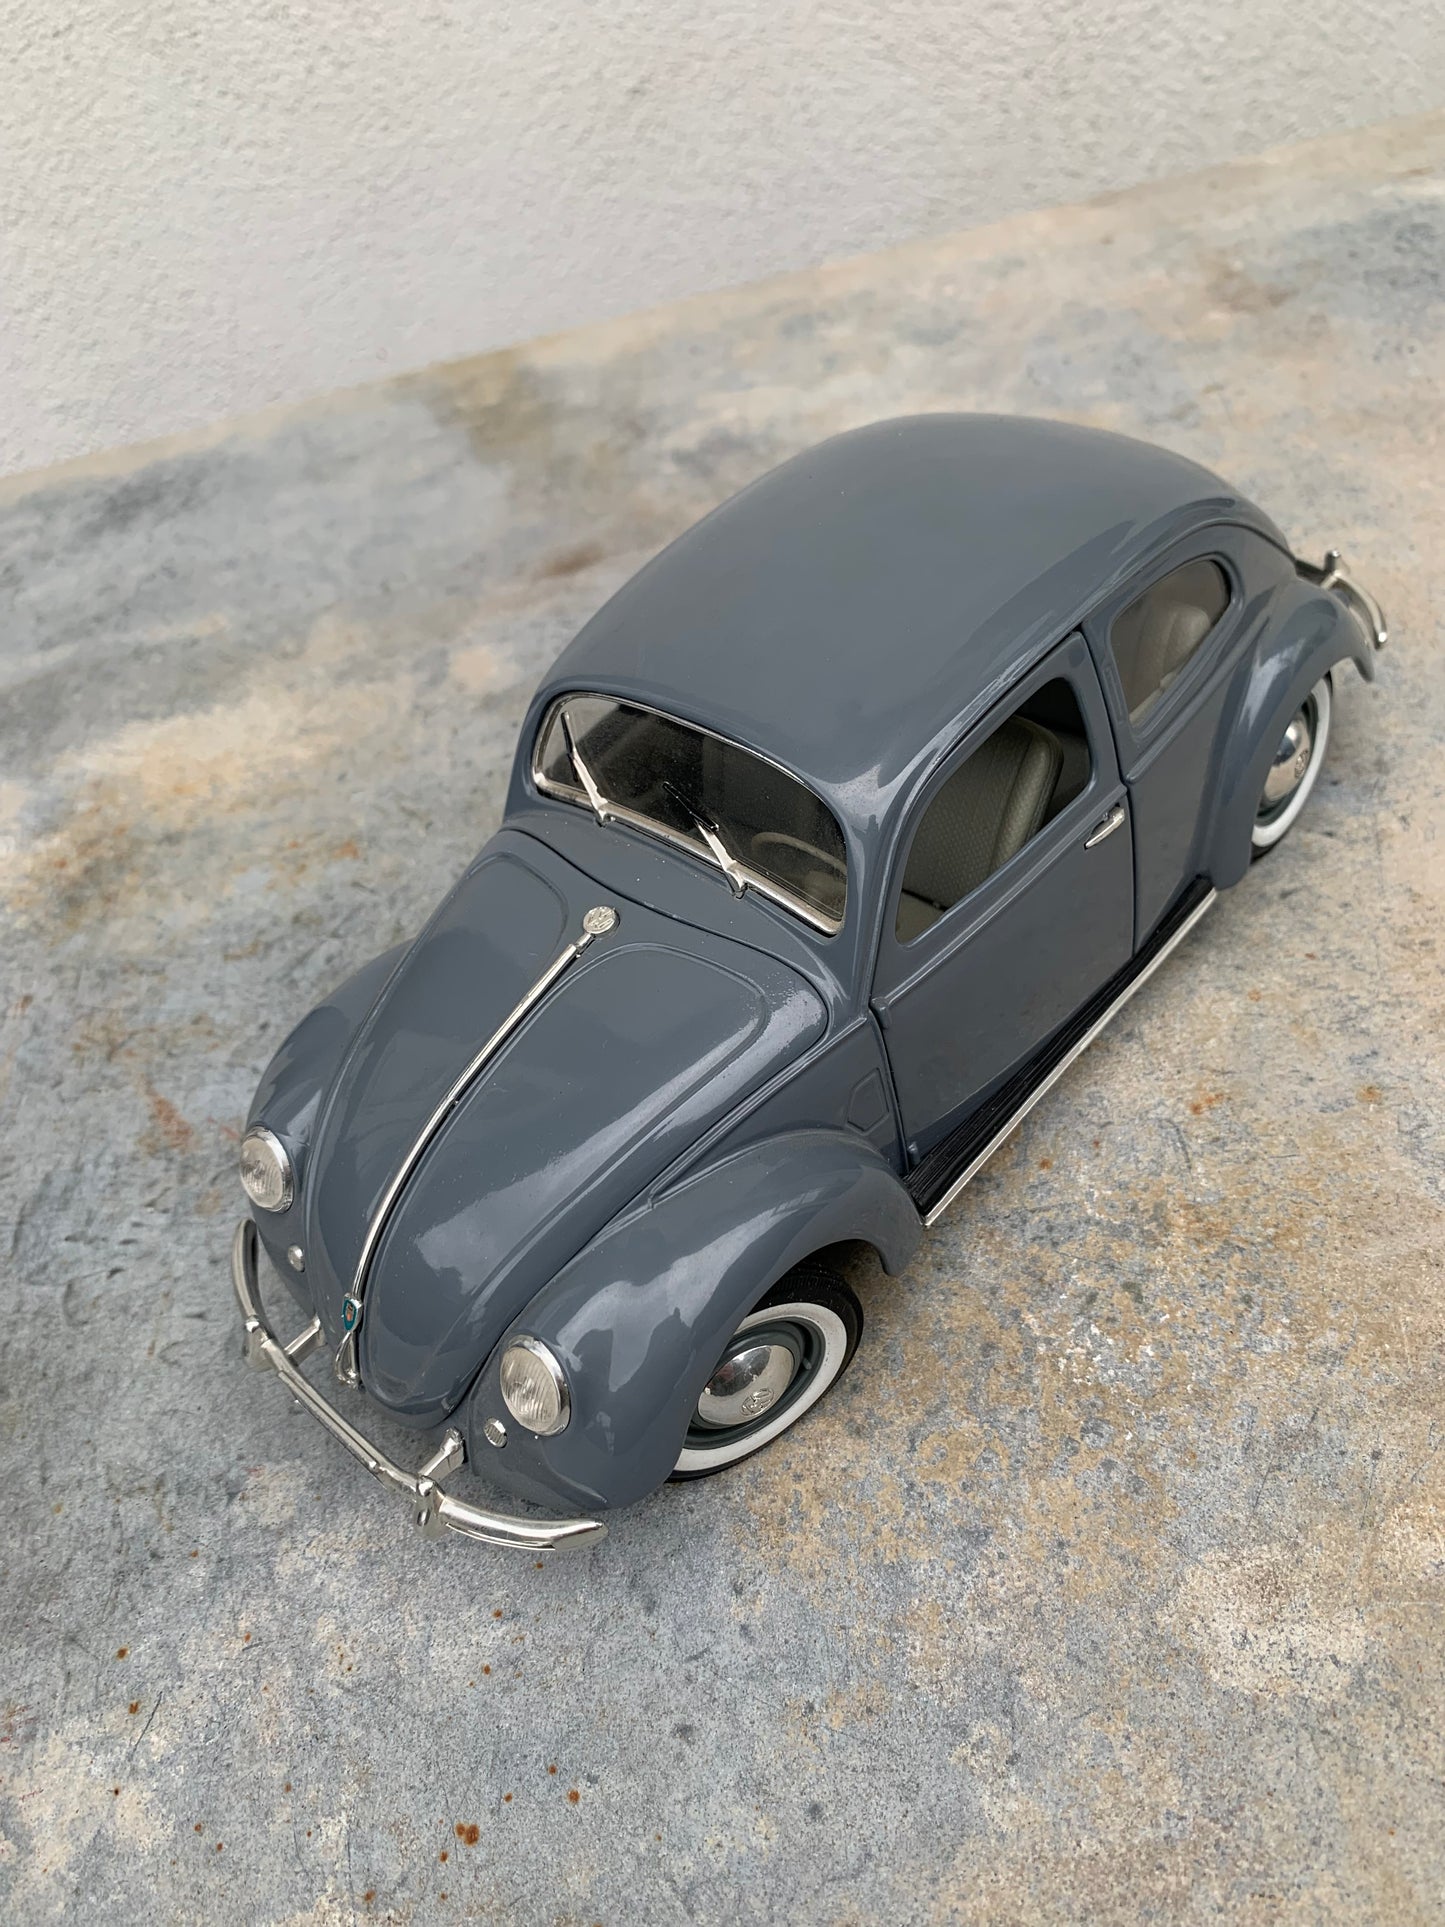 VW Sedan 1951